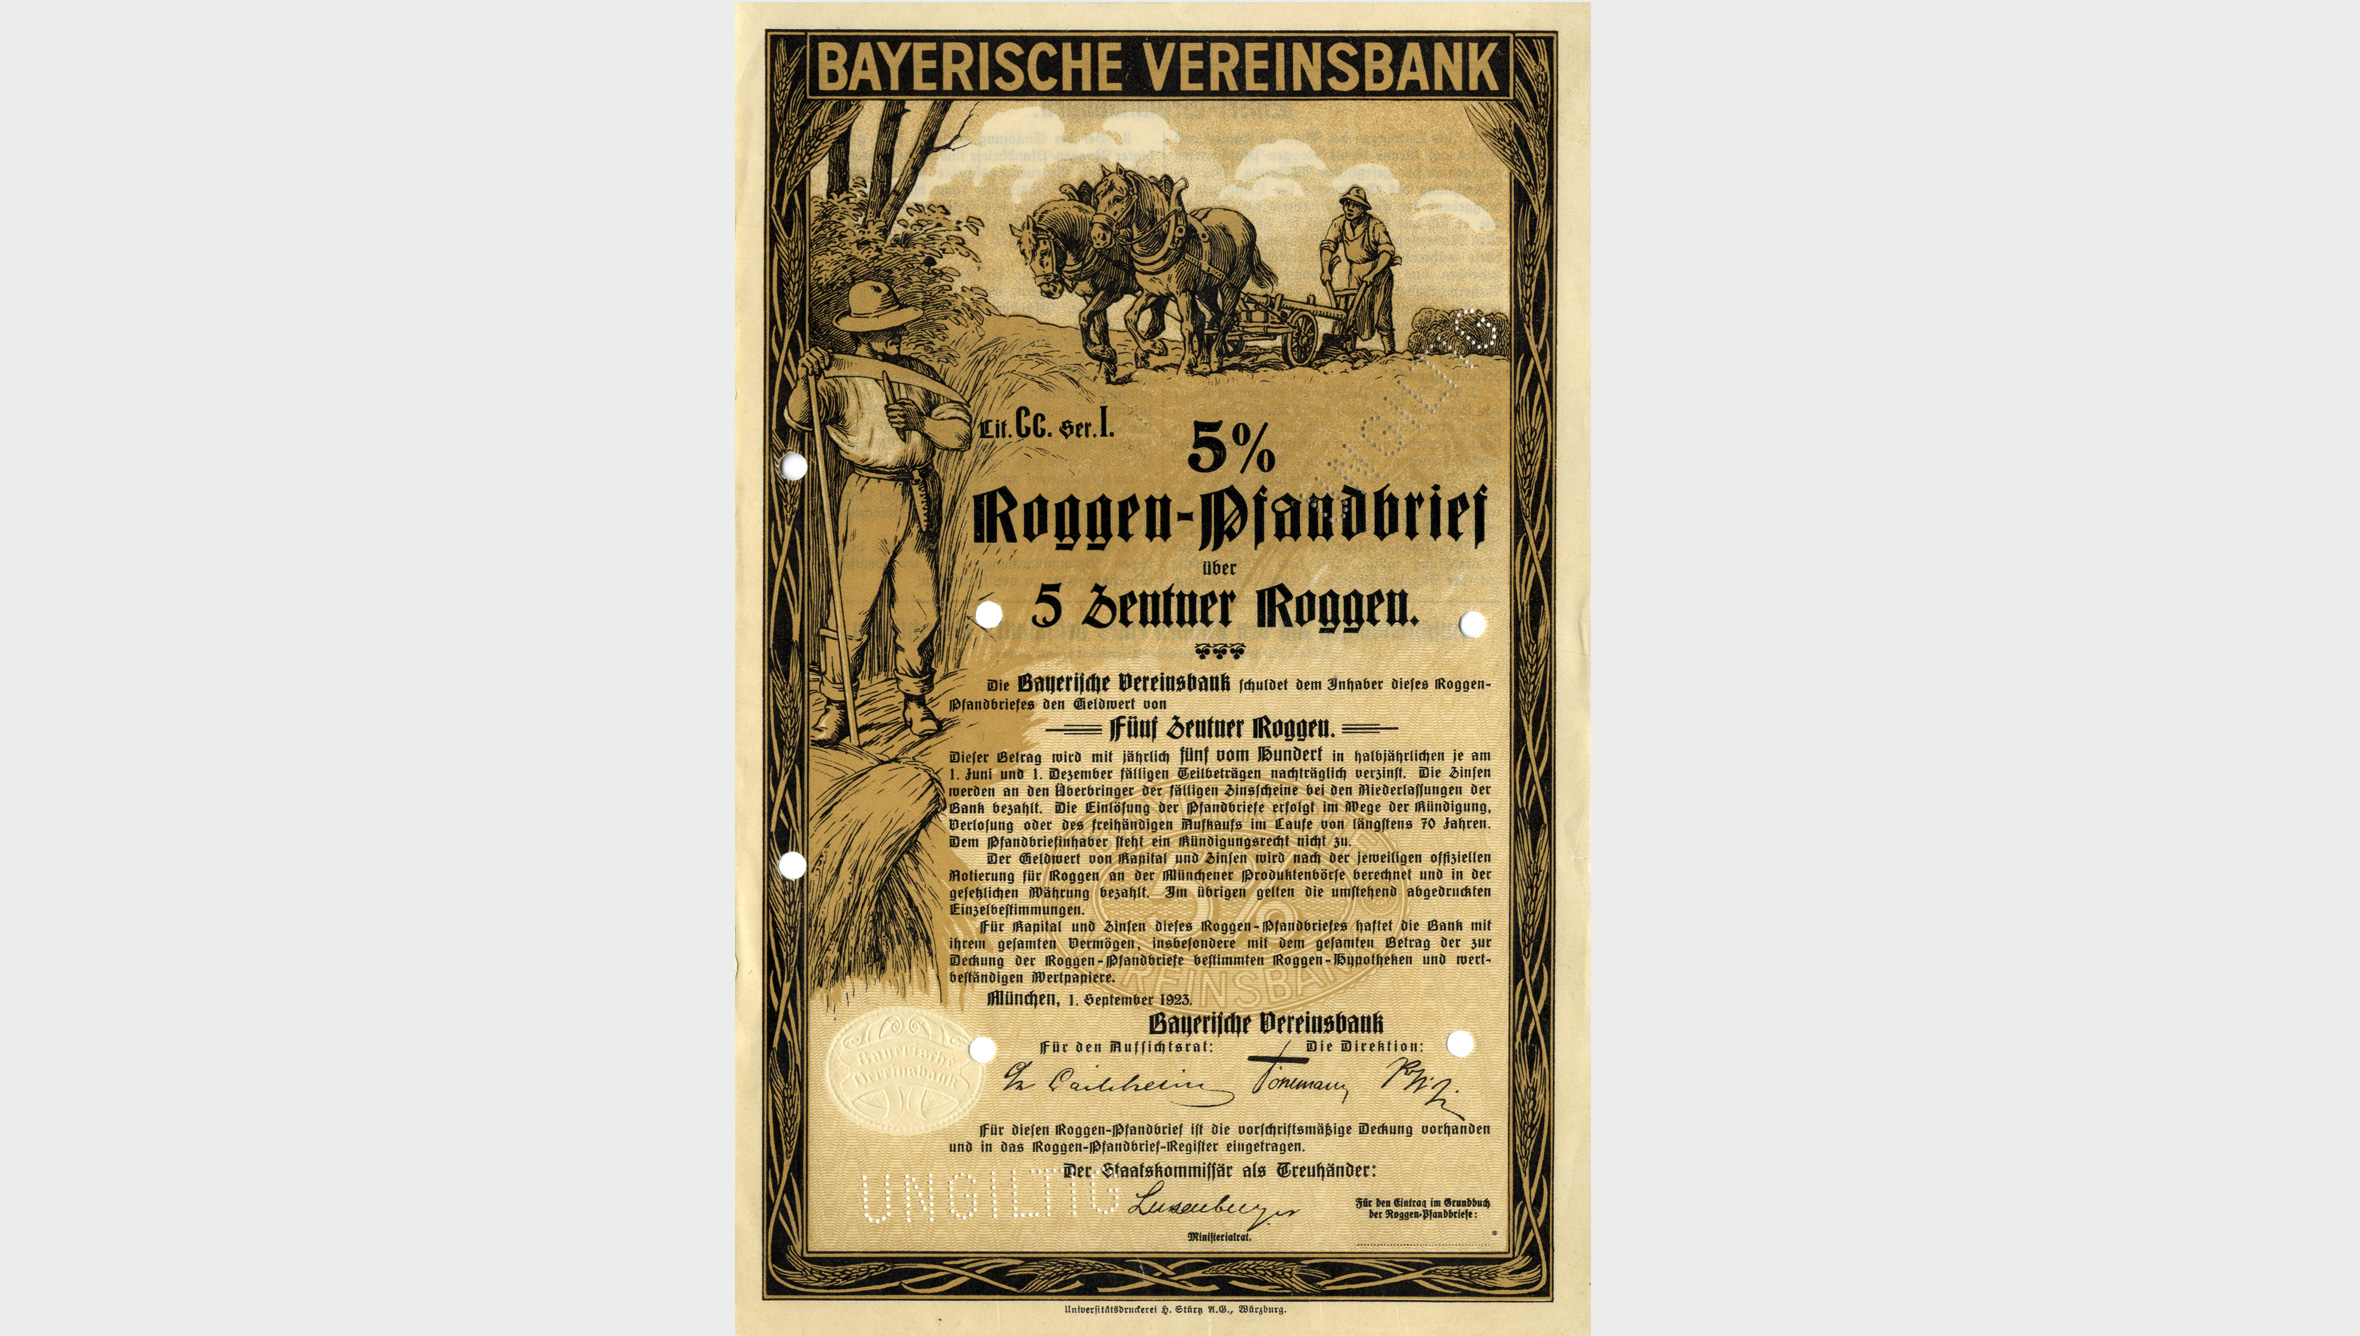 In der Hyperinflation 1923 erlaubte der Gesetzgeber eine Deckung von Pfandbriefen durch Getreide oder Gold. Die Bayerische Vereinsbank brachte Roggen-Pfandbriefe in den Handel.